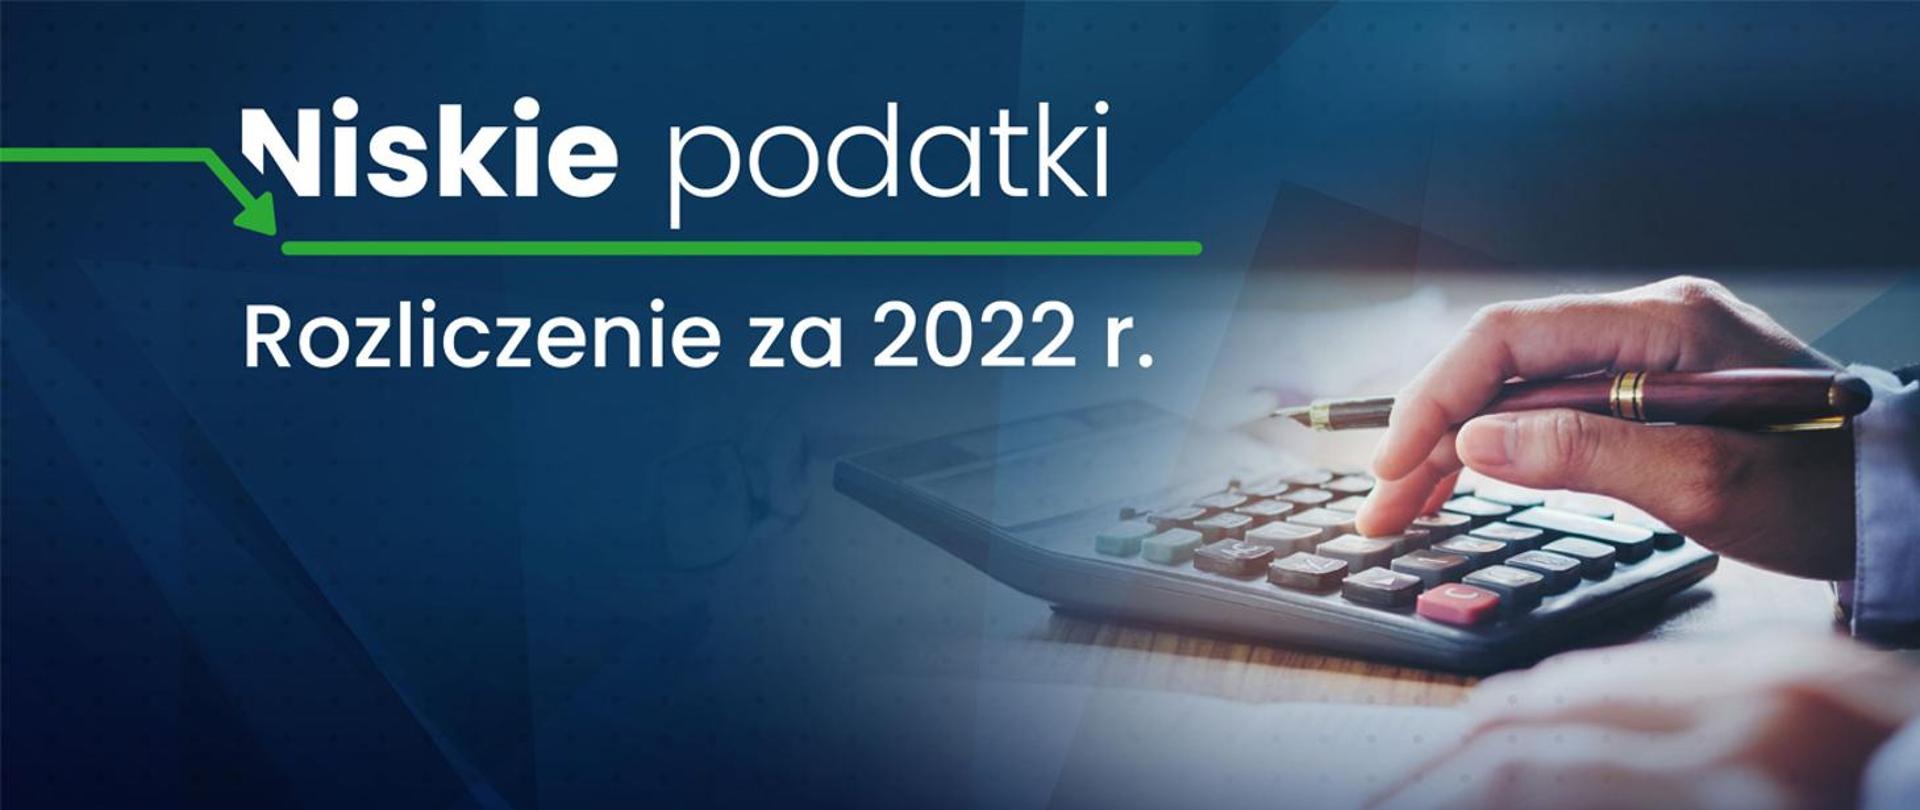 Rozliczenie PIT: zwroty i dopłaty podatku za 2022 r.